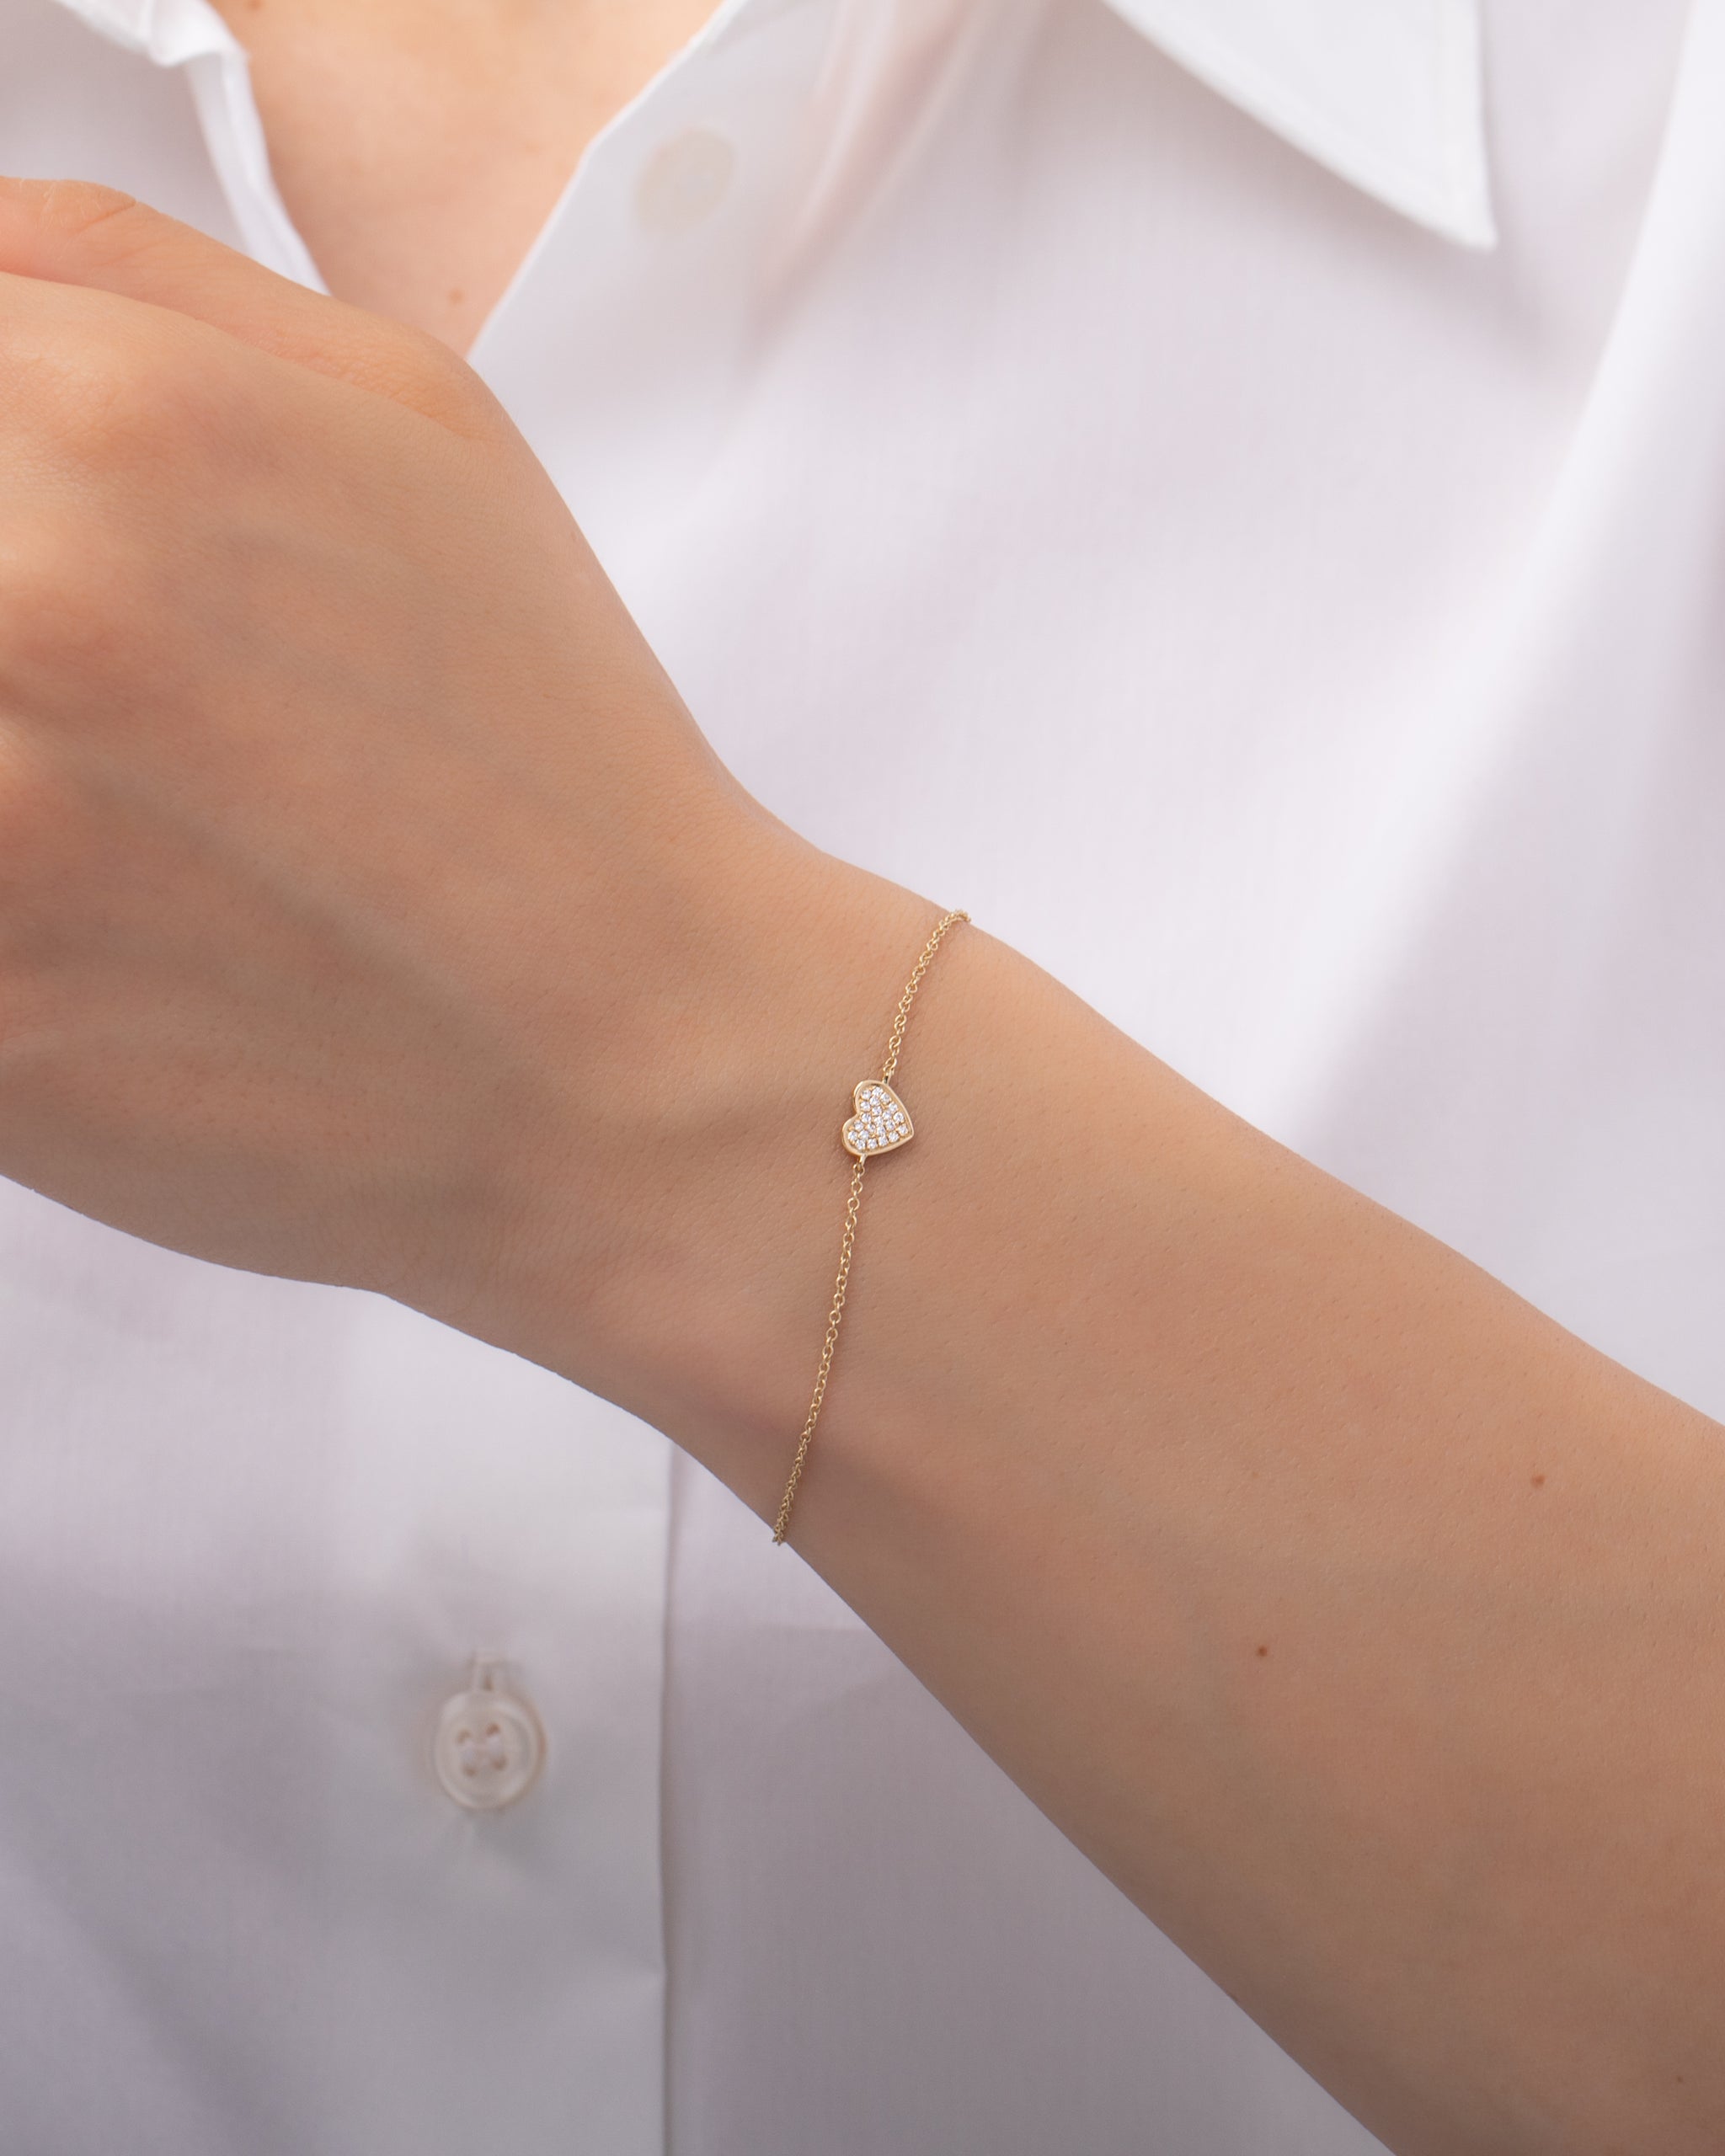 Diamond Heart Bracelet - Zoe Lev Jewelry